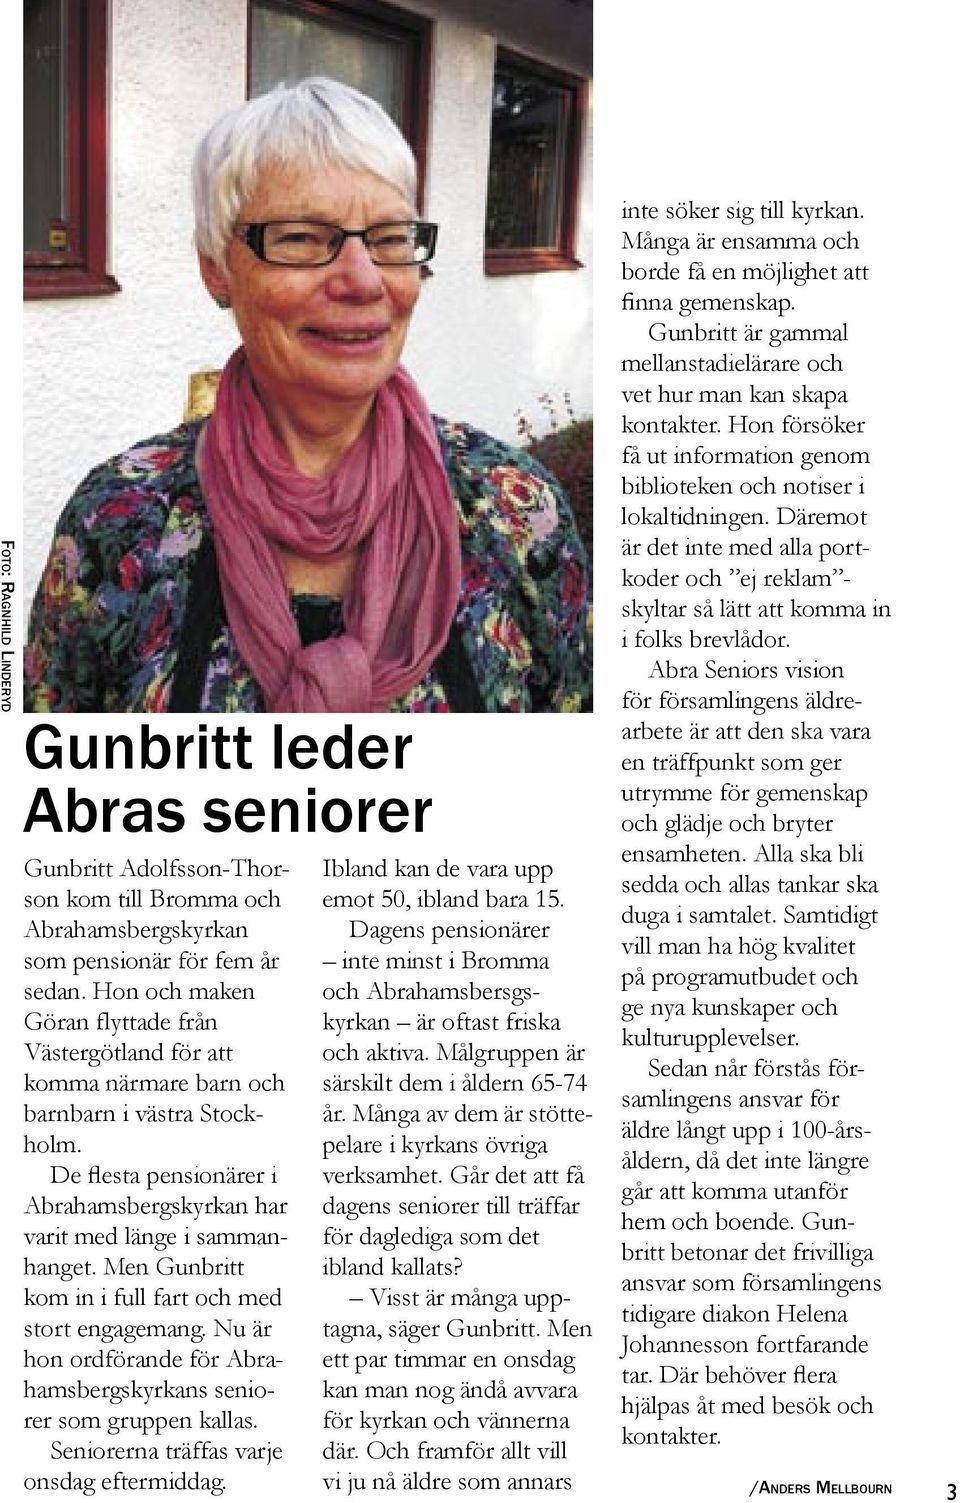 Men Gunbritt kom in i full fart och med stort engagemang. Nu är hon ordförande för Abrahamsbergskyrkans seniorer som gruppen kallas. Seniorerna träffas varje onsdag eftermiddag.